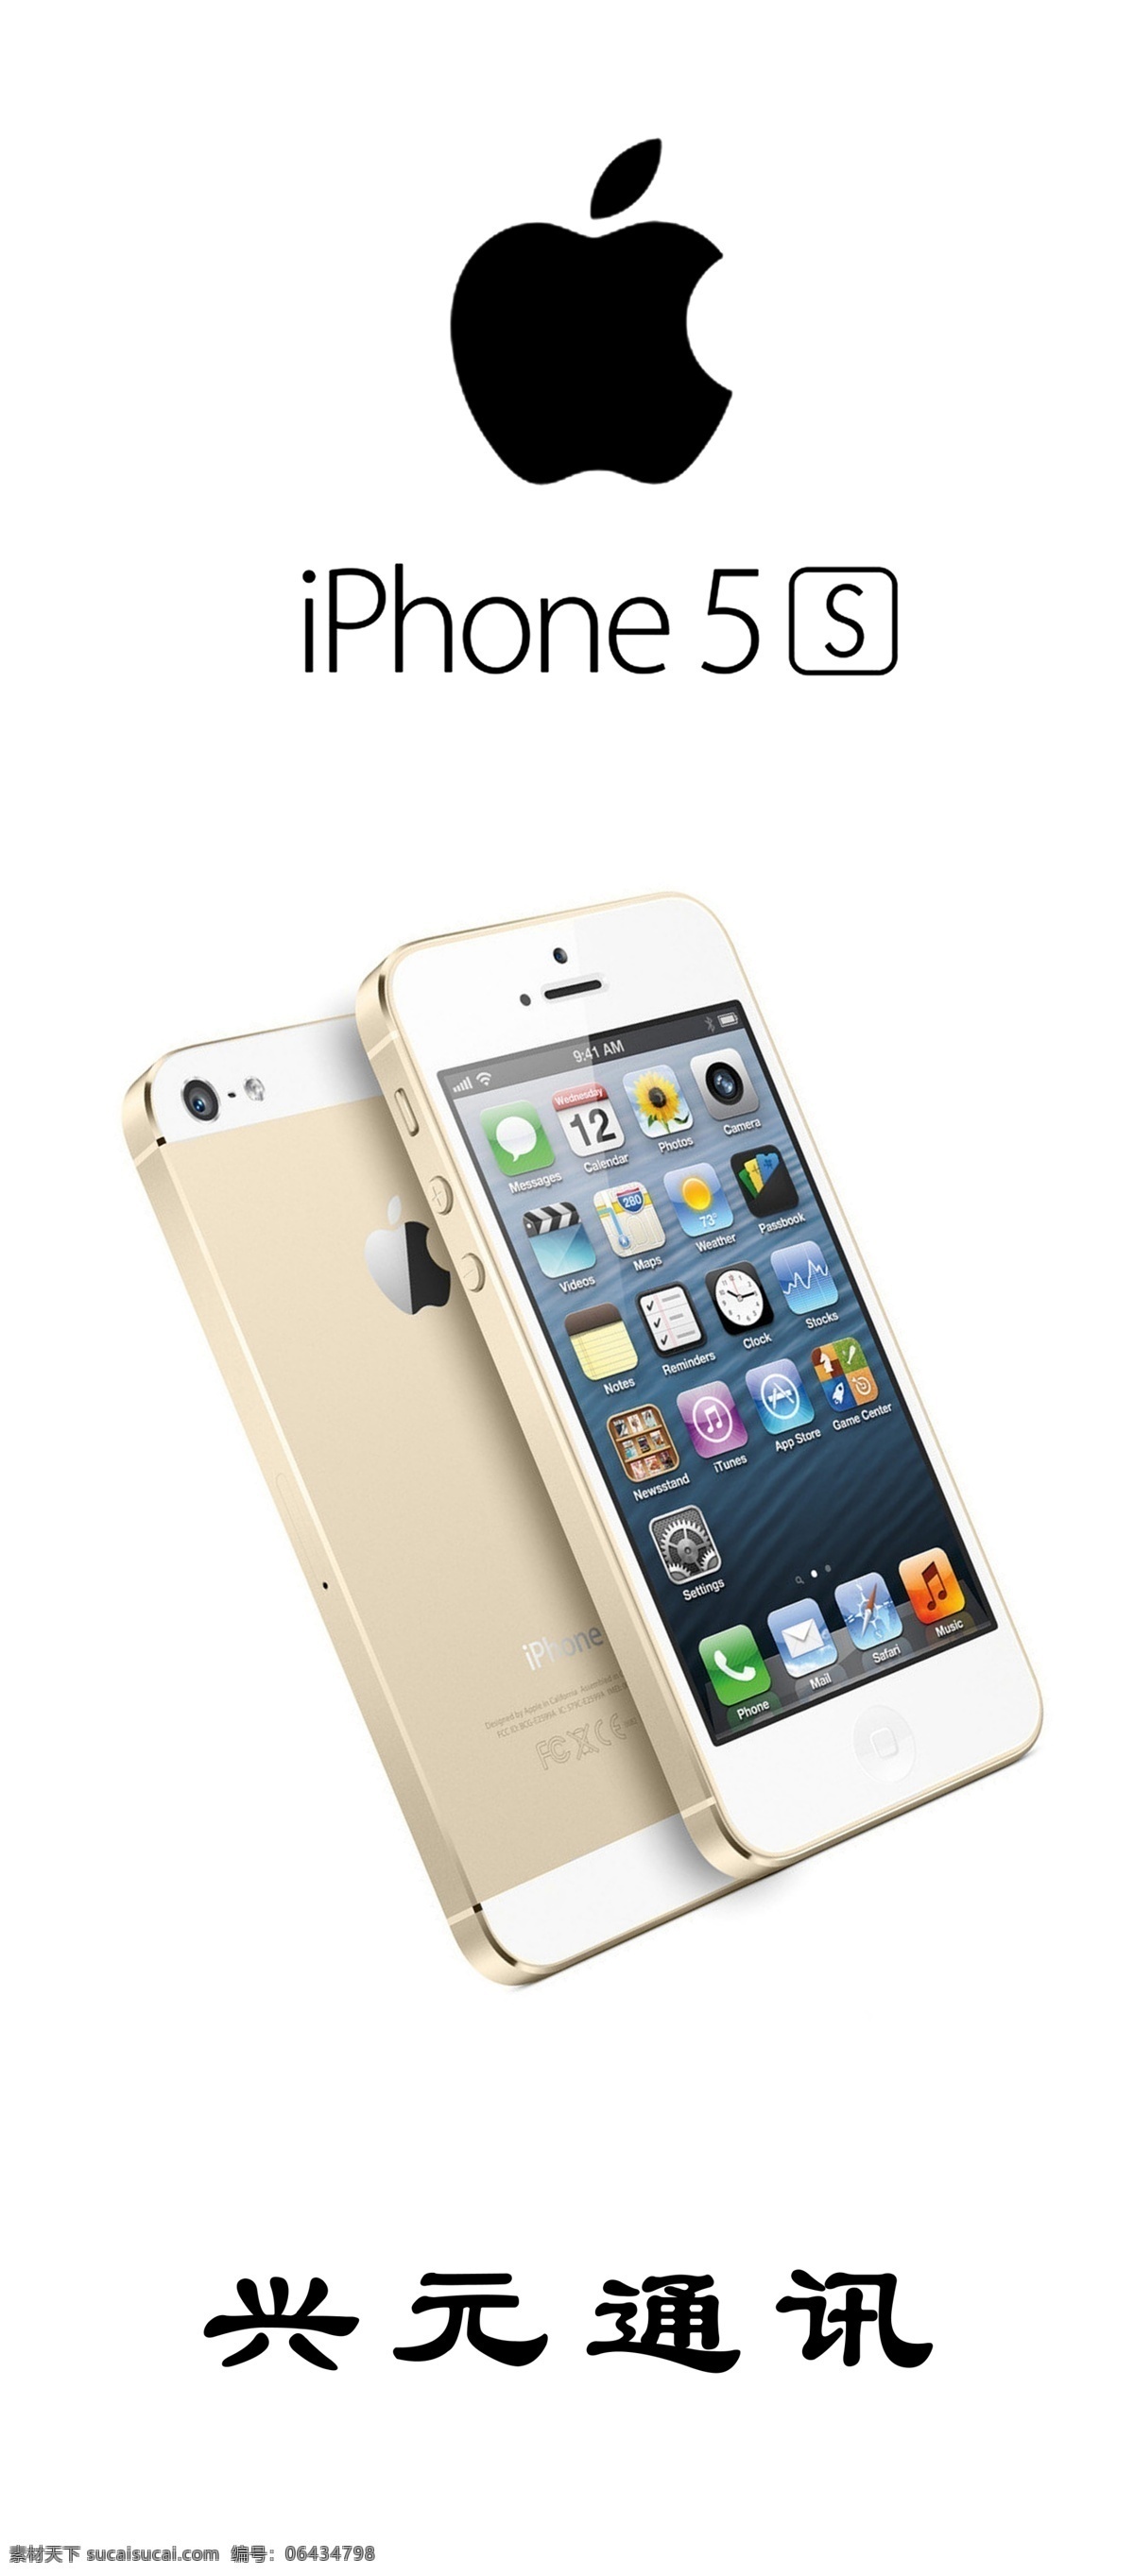 苹果手机 iphone4s iphone5 iphone5s iphone 土豪 金 土豪金 苹果标志 手机 苹果海报 苹果展板 广告设计模板 源文件 白色